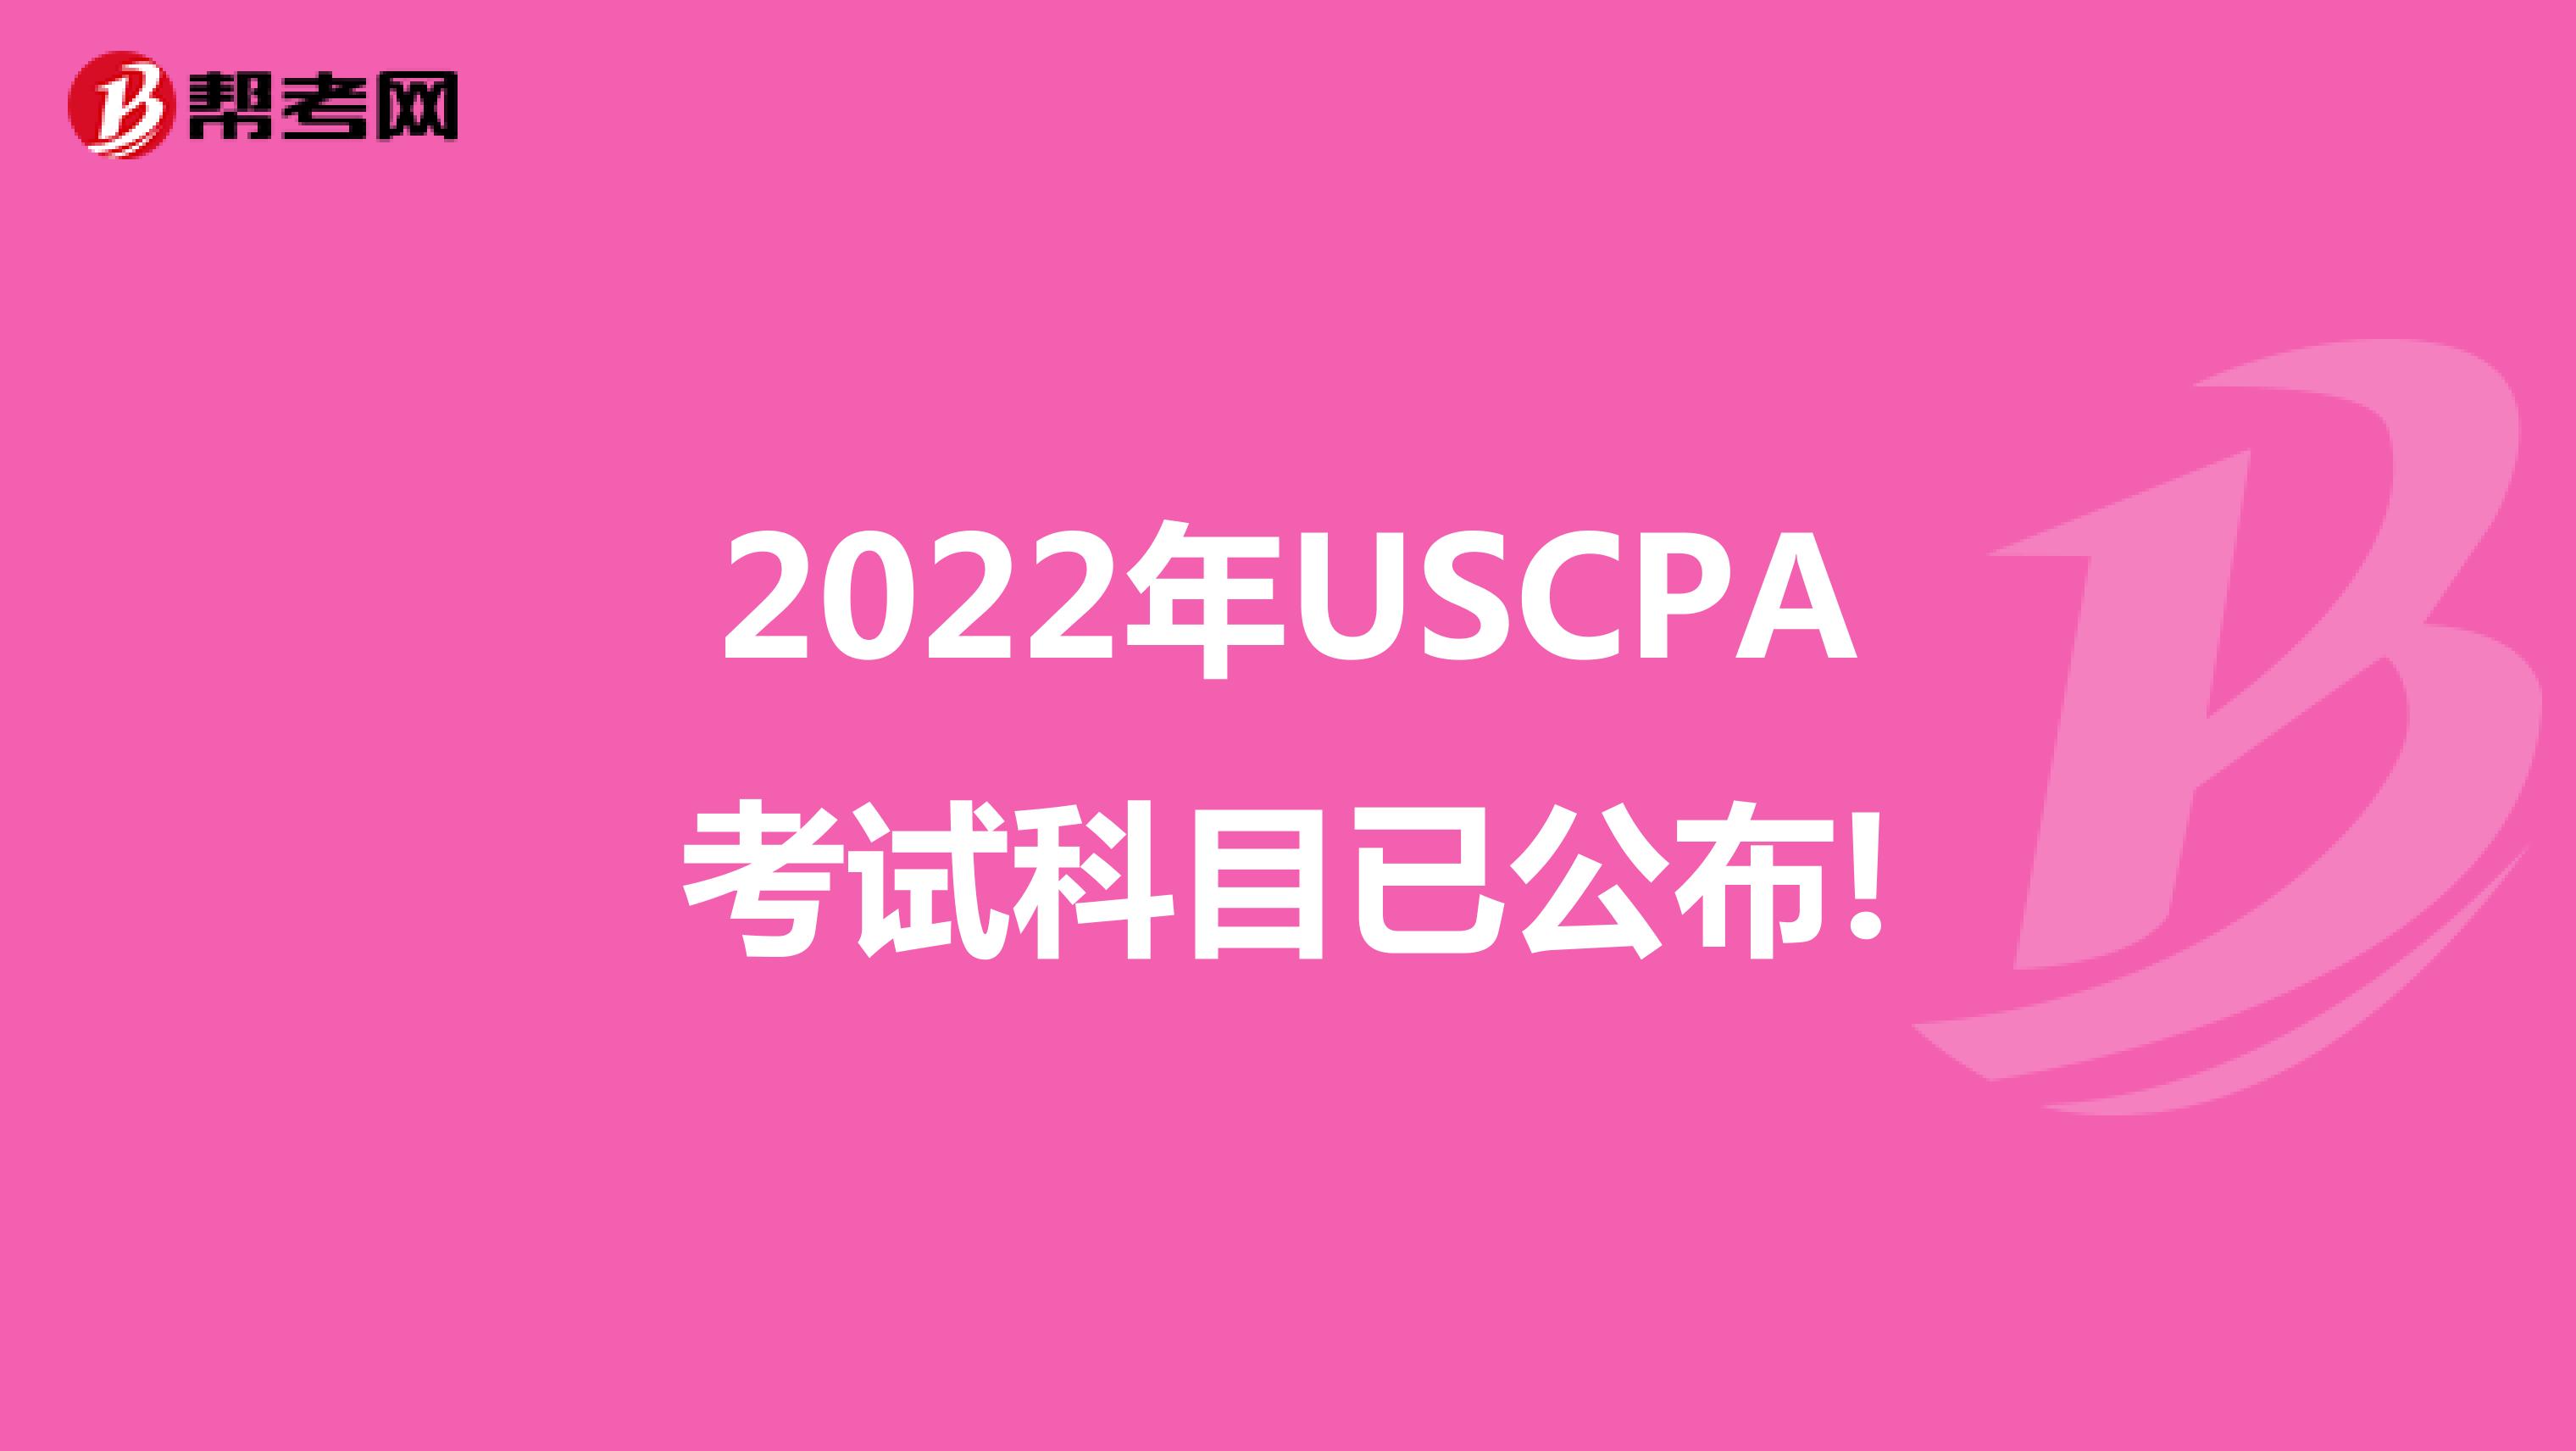 2022年USCPA考试科目已公布!